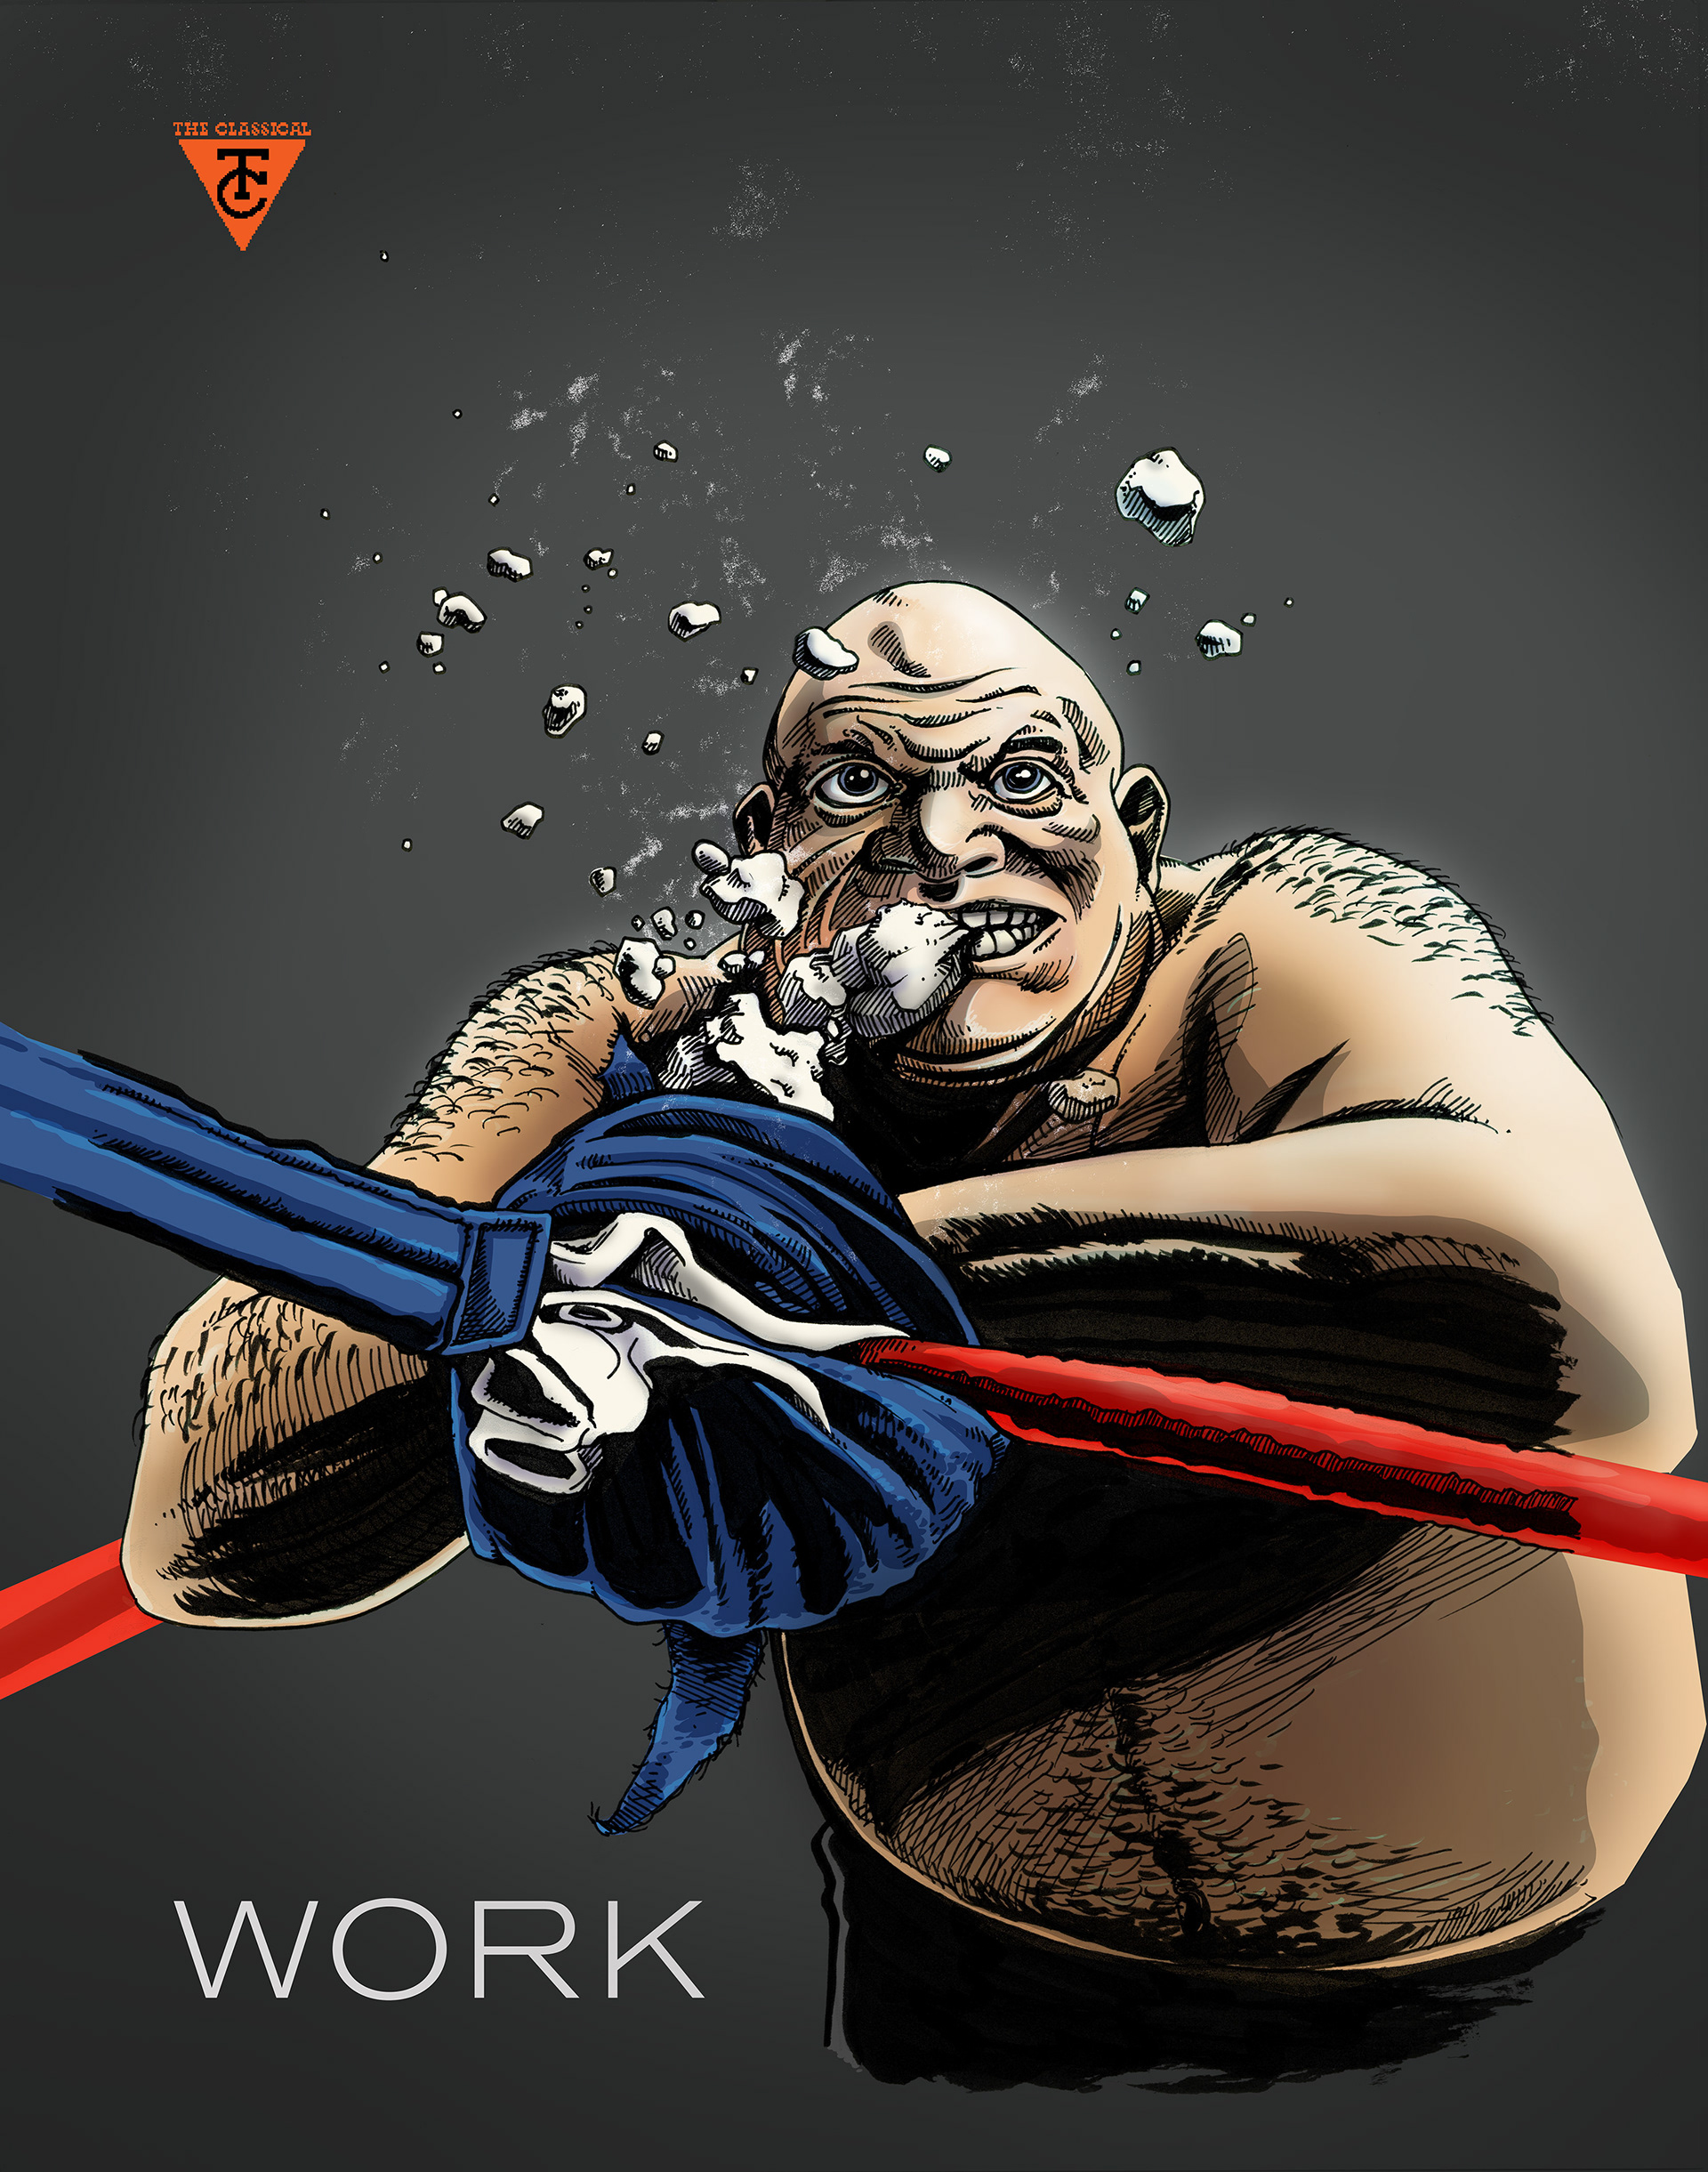 Eli Neugeboren - The Classical: Work (all-wrestling issue)